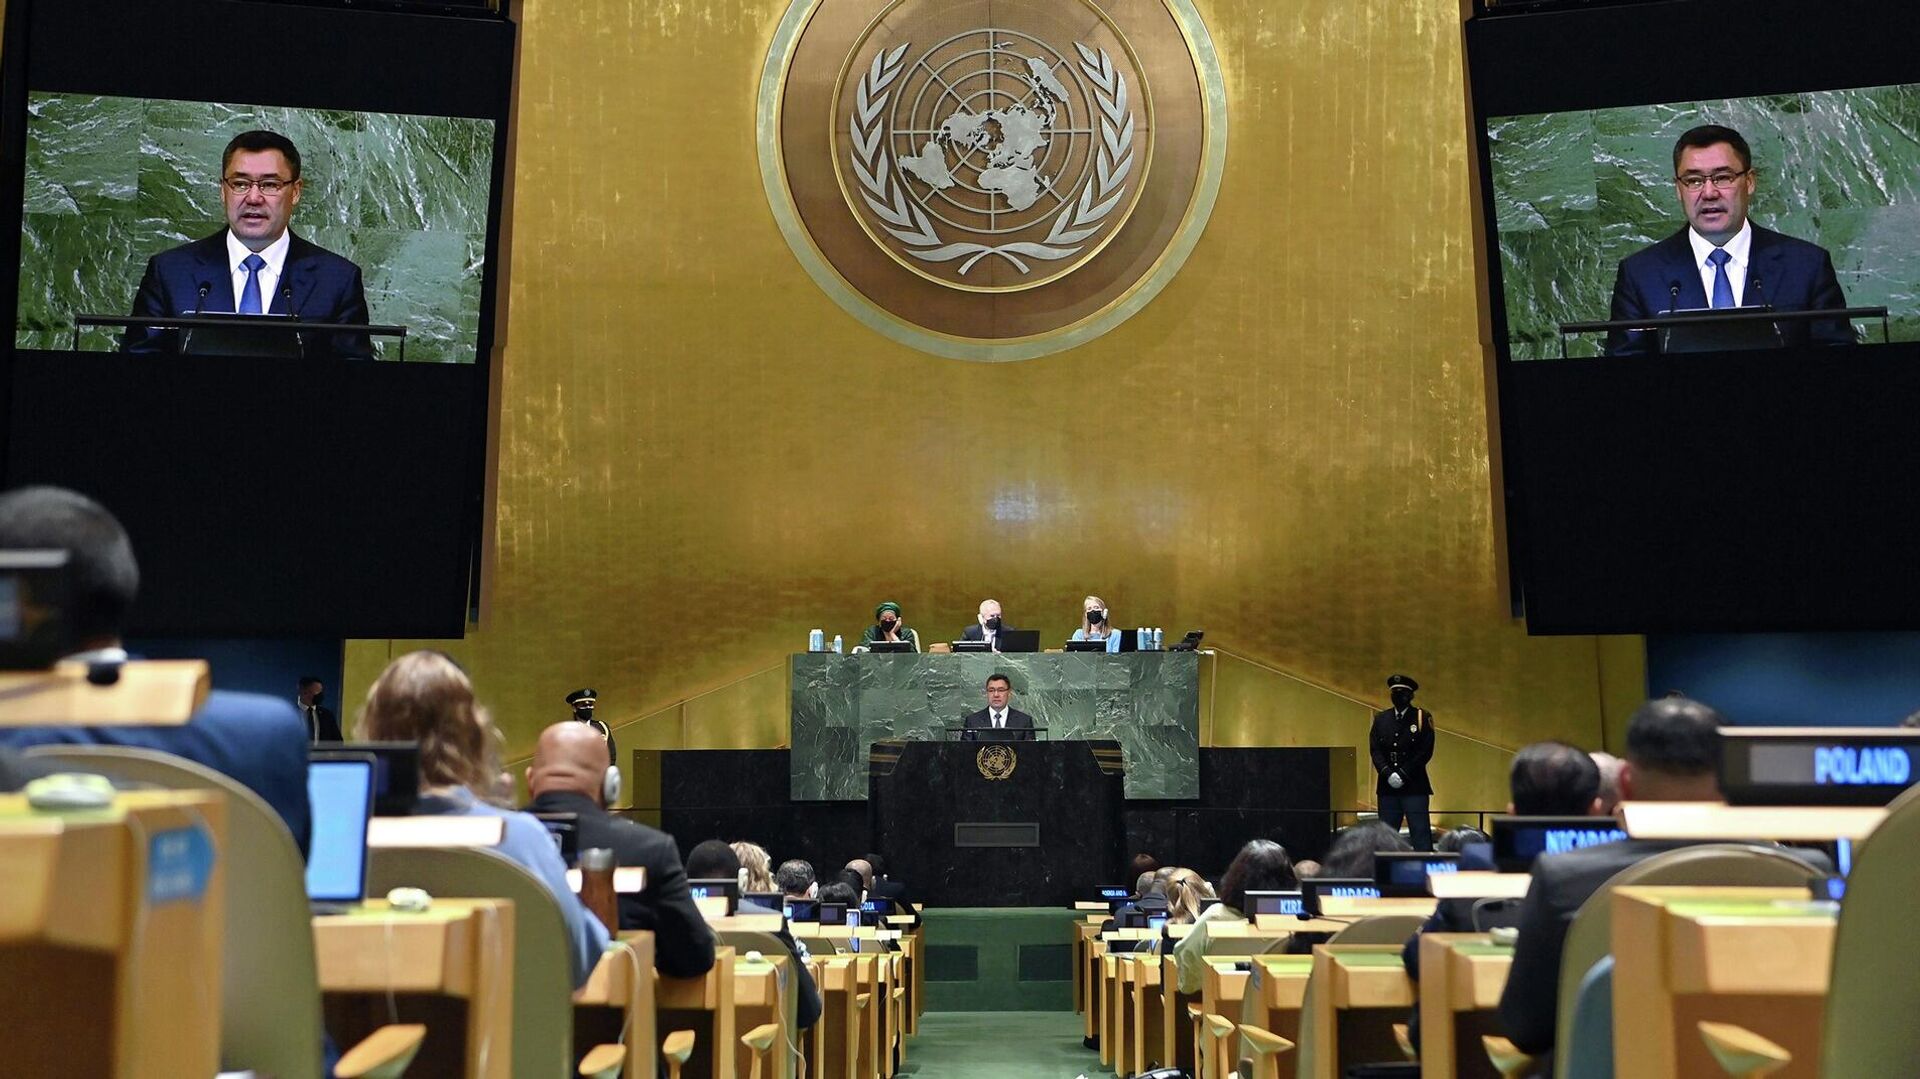 Президент Кыргызстана Садыр Жапаров во время выступления на 77-й сессии Генеральной Ассамблеи ООН в Нью-Йорке. 20 сентября 2022 года - Sputnik Кыргызстан, 1920, 20.09.2022